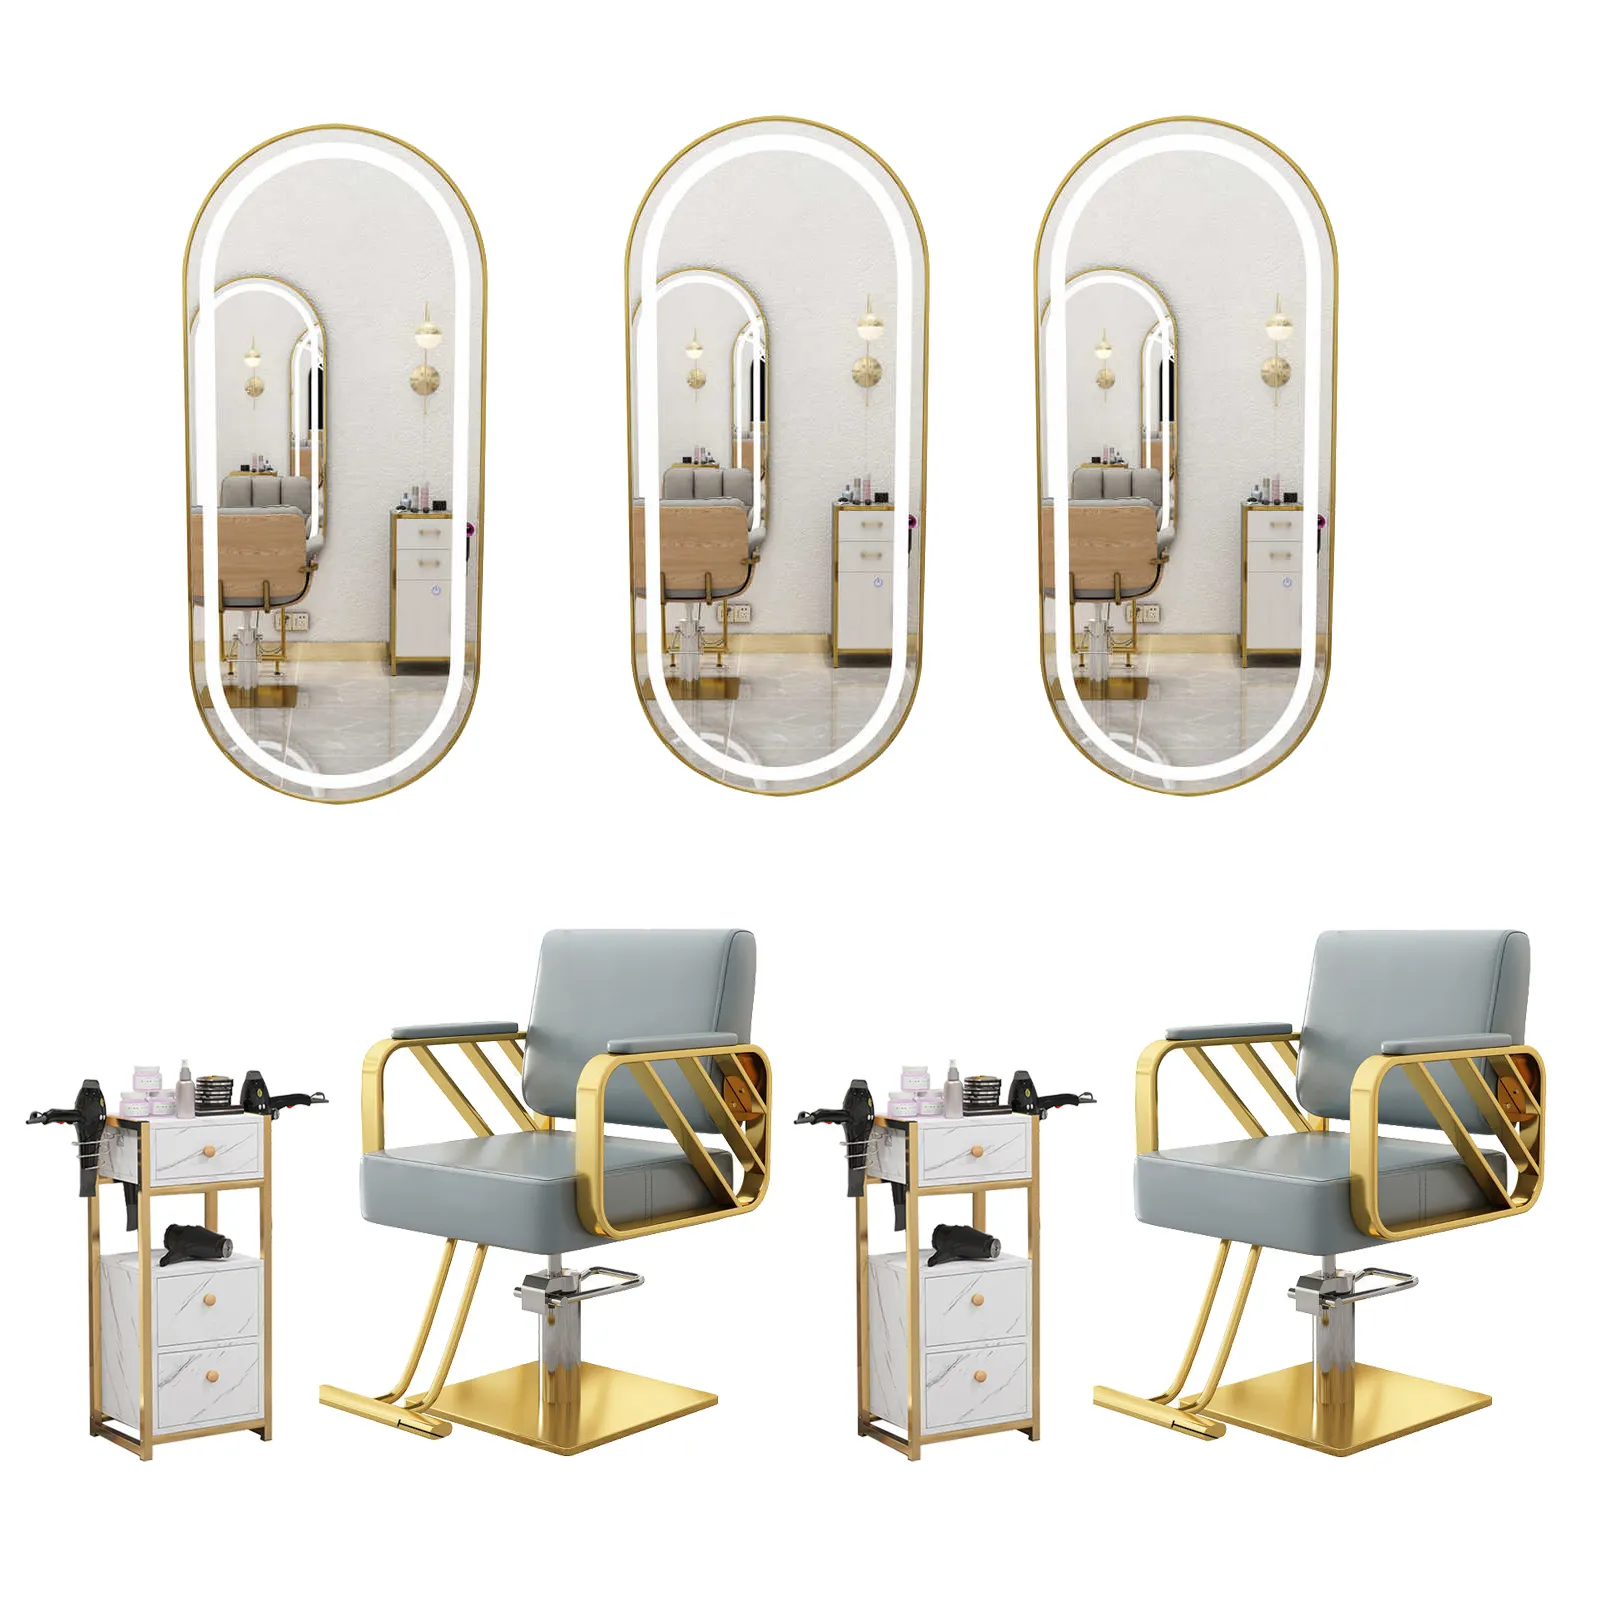 Meiyi nova chegada salão mobiliário conjunto equipamentos beleza espelho estação barbearia gabinete preto cadeira de barbeiro